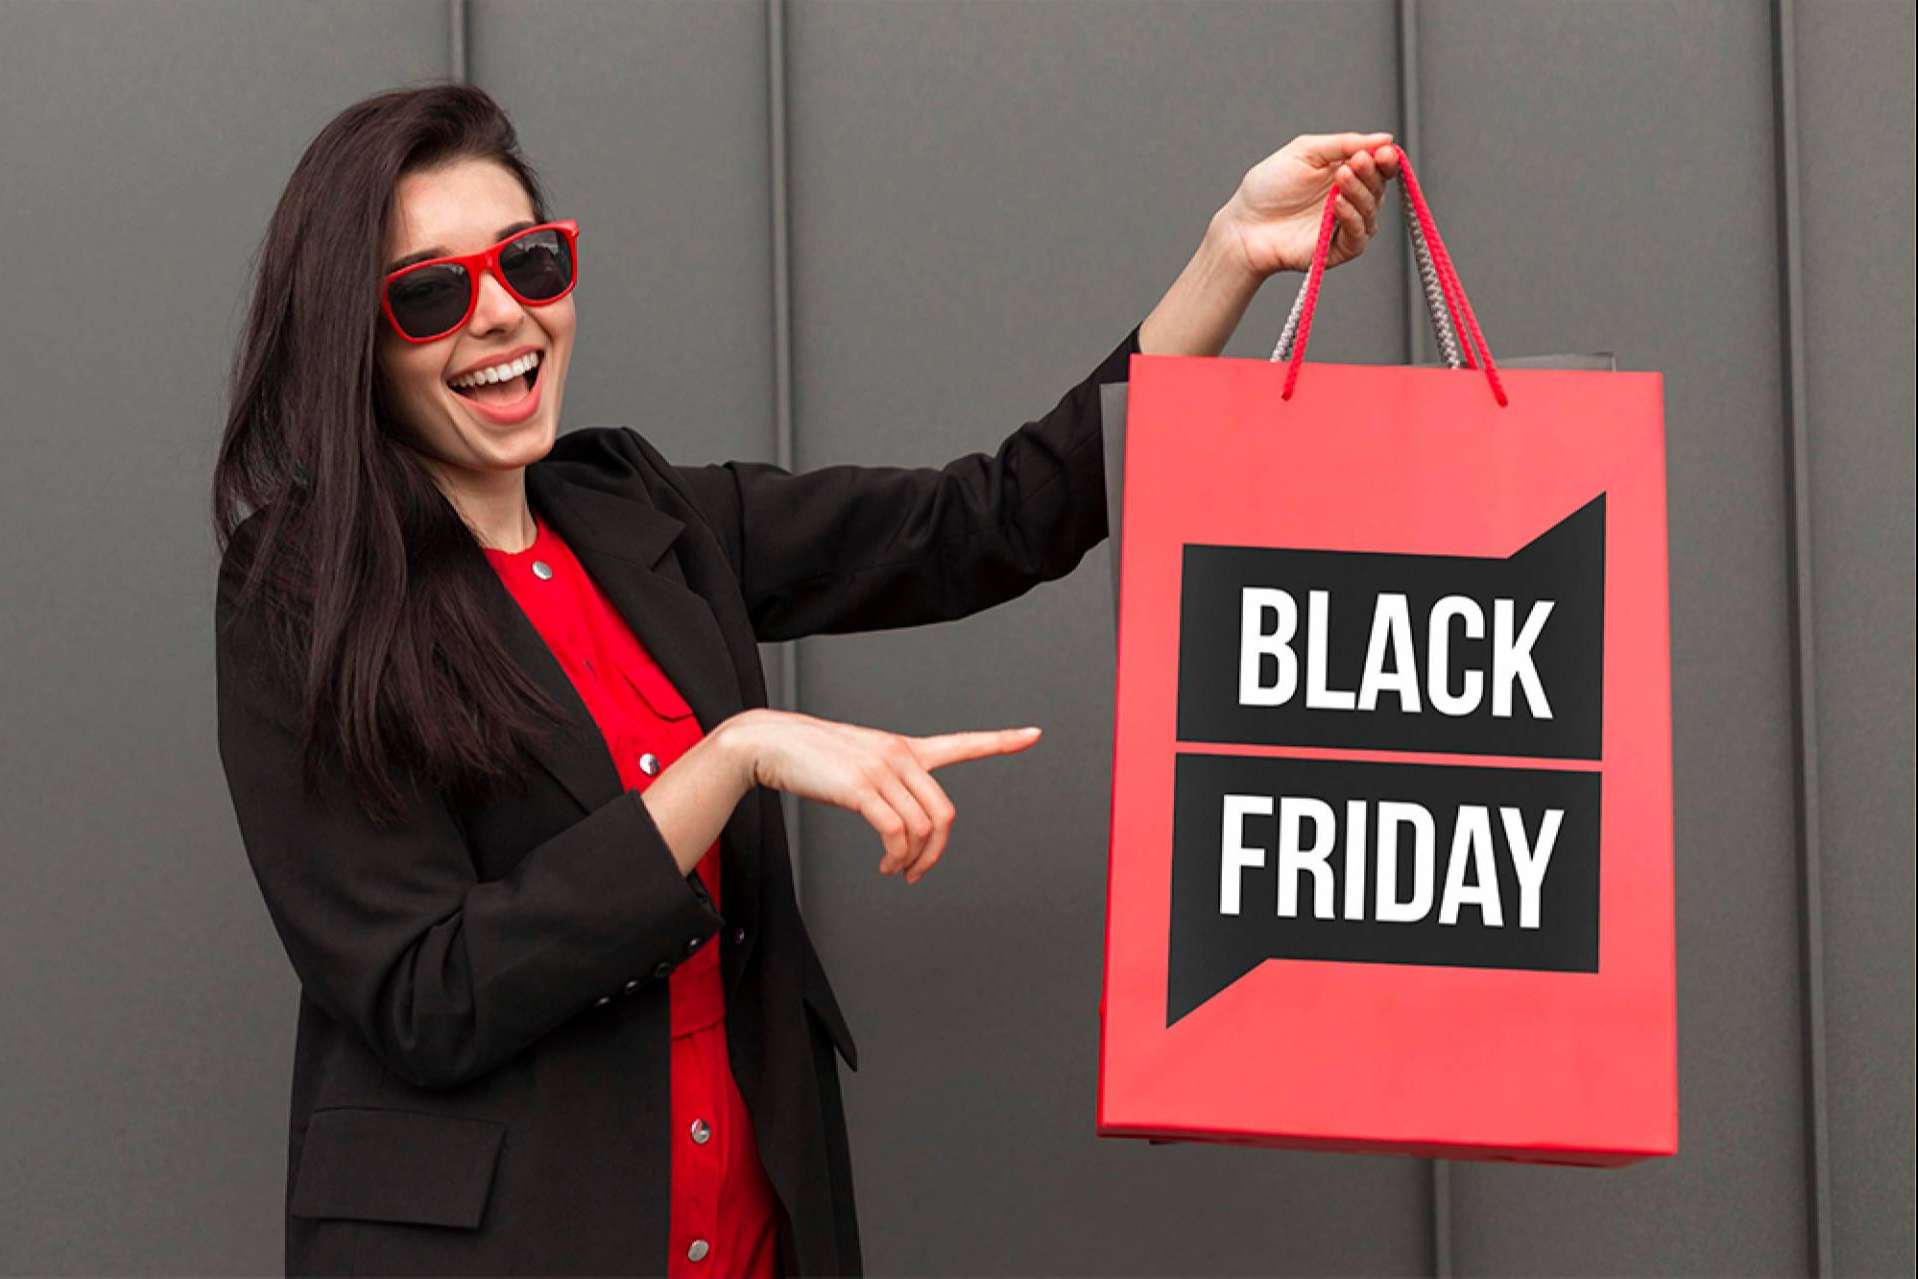 Mediterránea Business School ofrece consejos a pequeños y medianos negocios para vender más durante el Black Friday